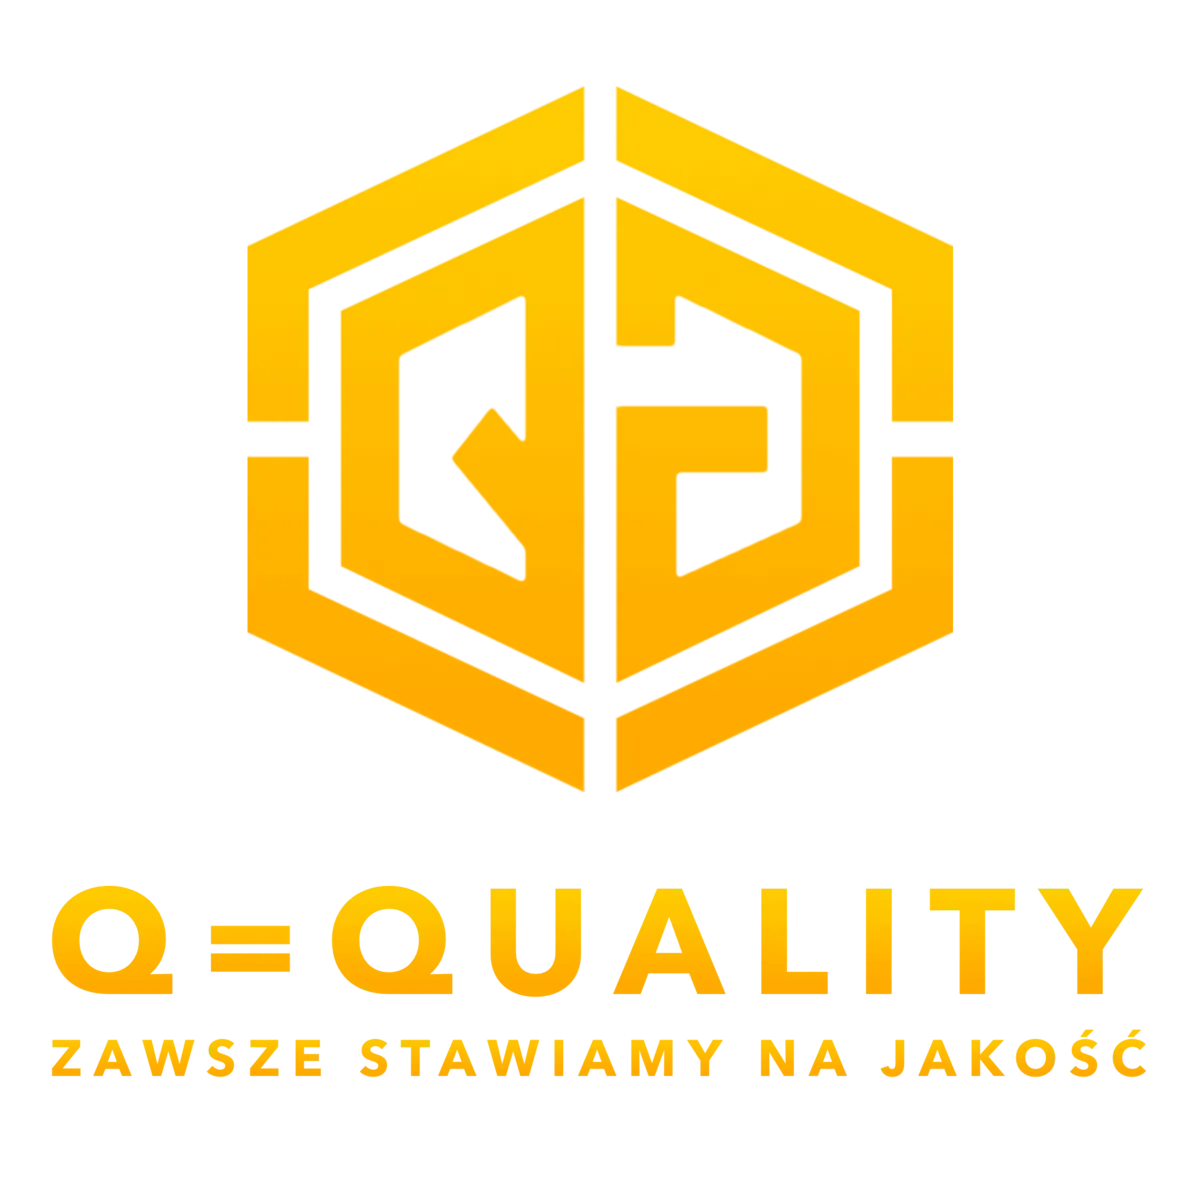 Q = Quality